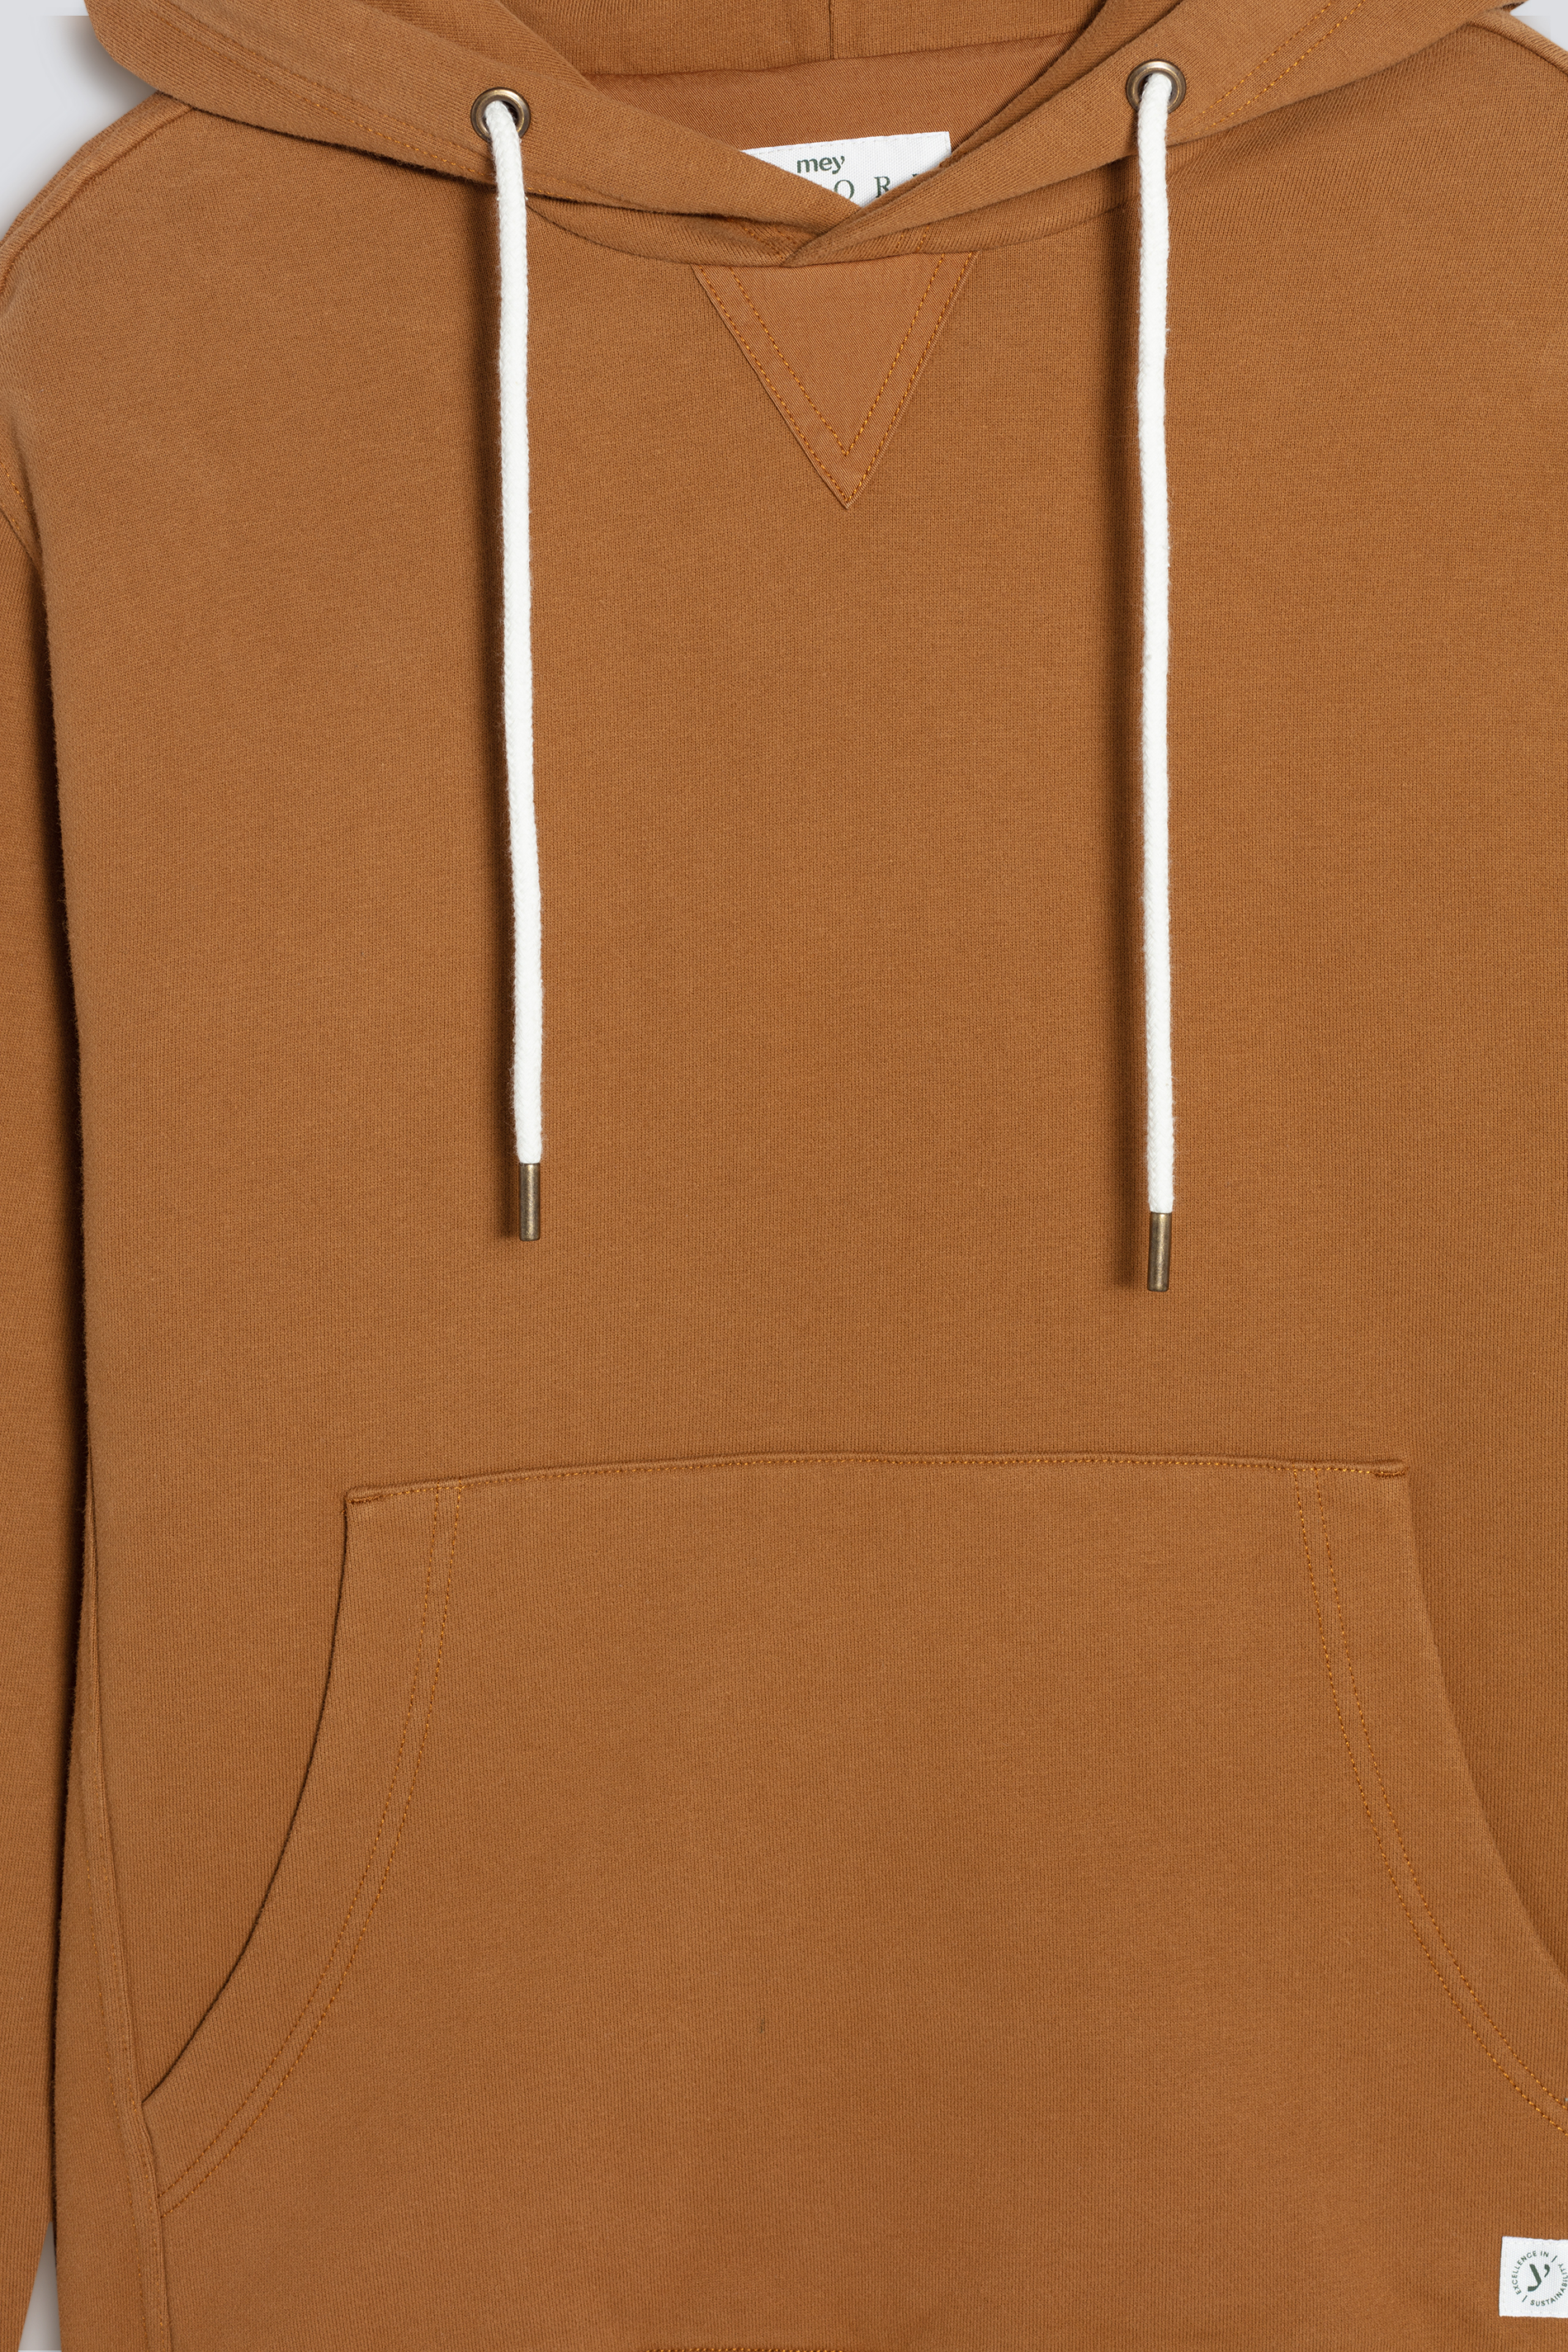 Hoodie-Sweatshirt Rubber Serie Soft Felpa Detailansicht 02 | mey®